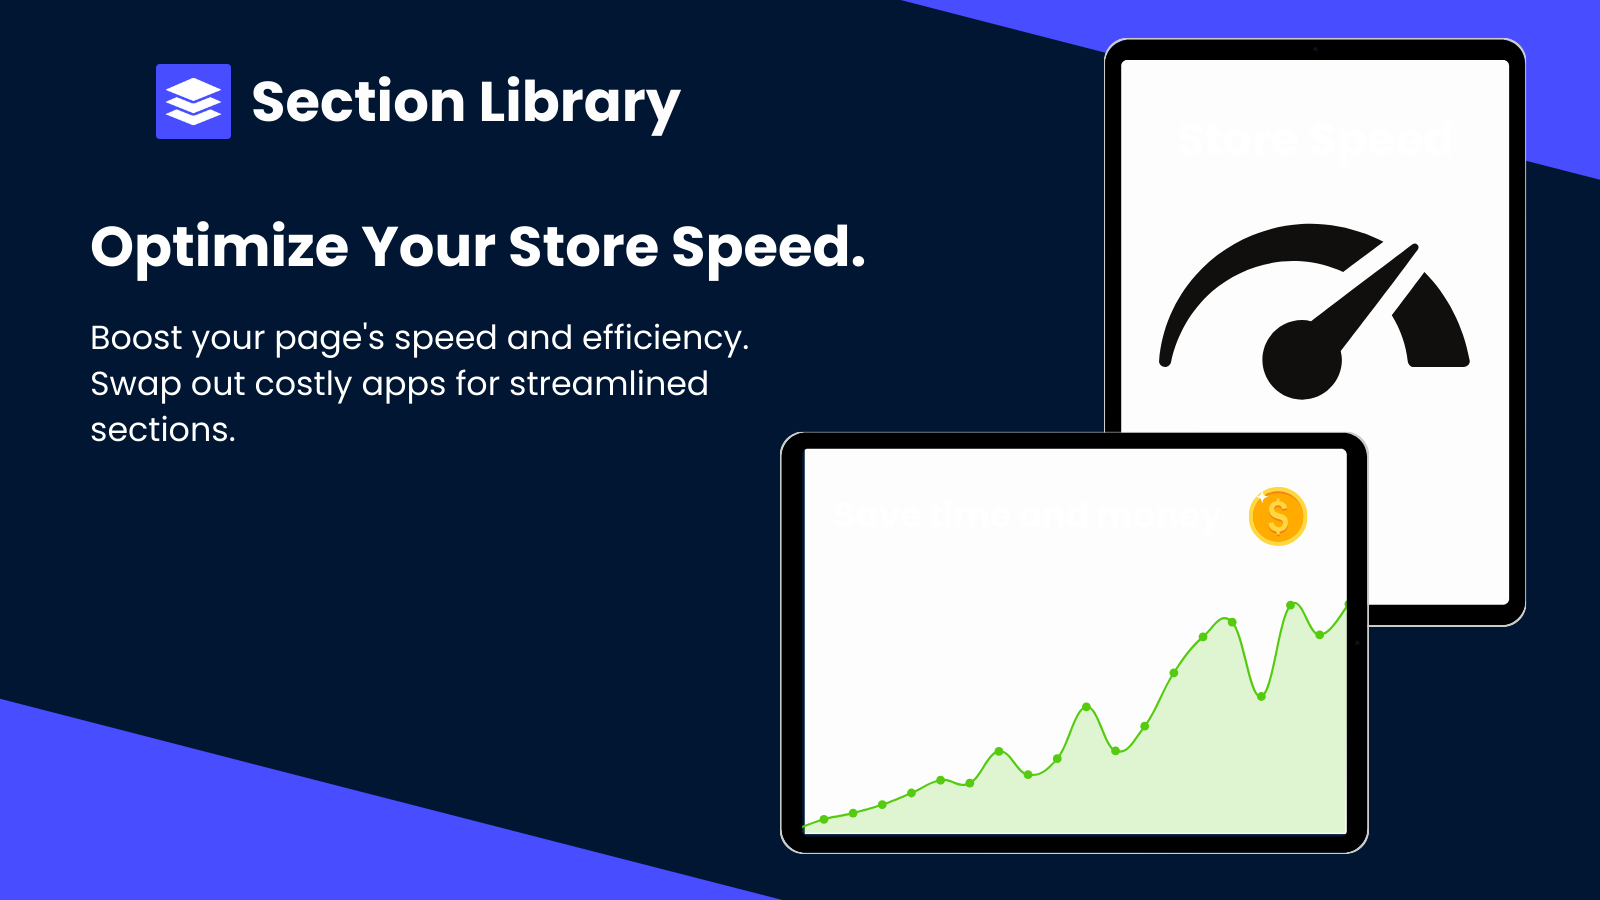 Una explicación de cómo la aplicación puede beneficiar la velocidad de la tienda